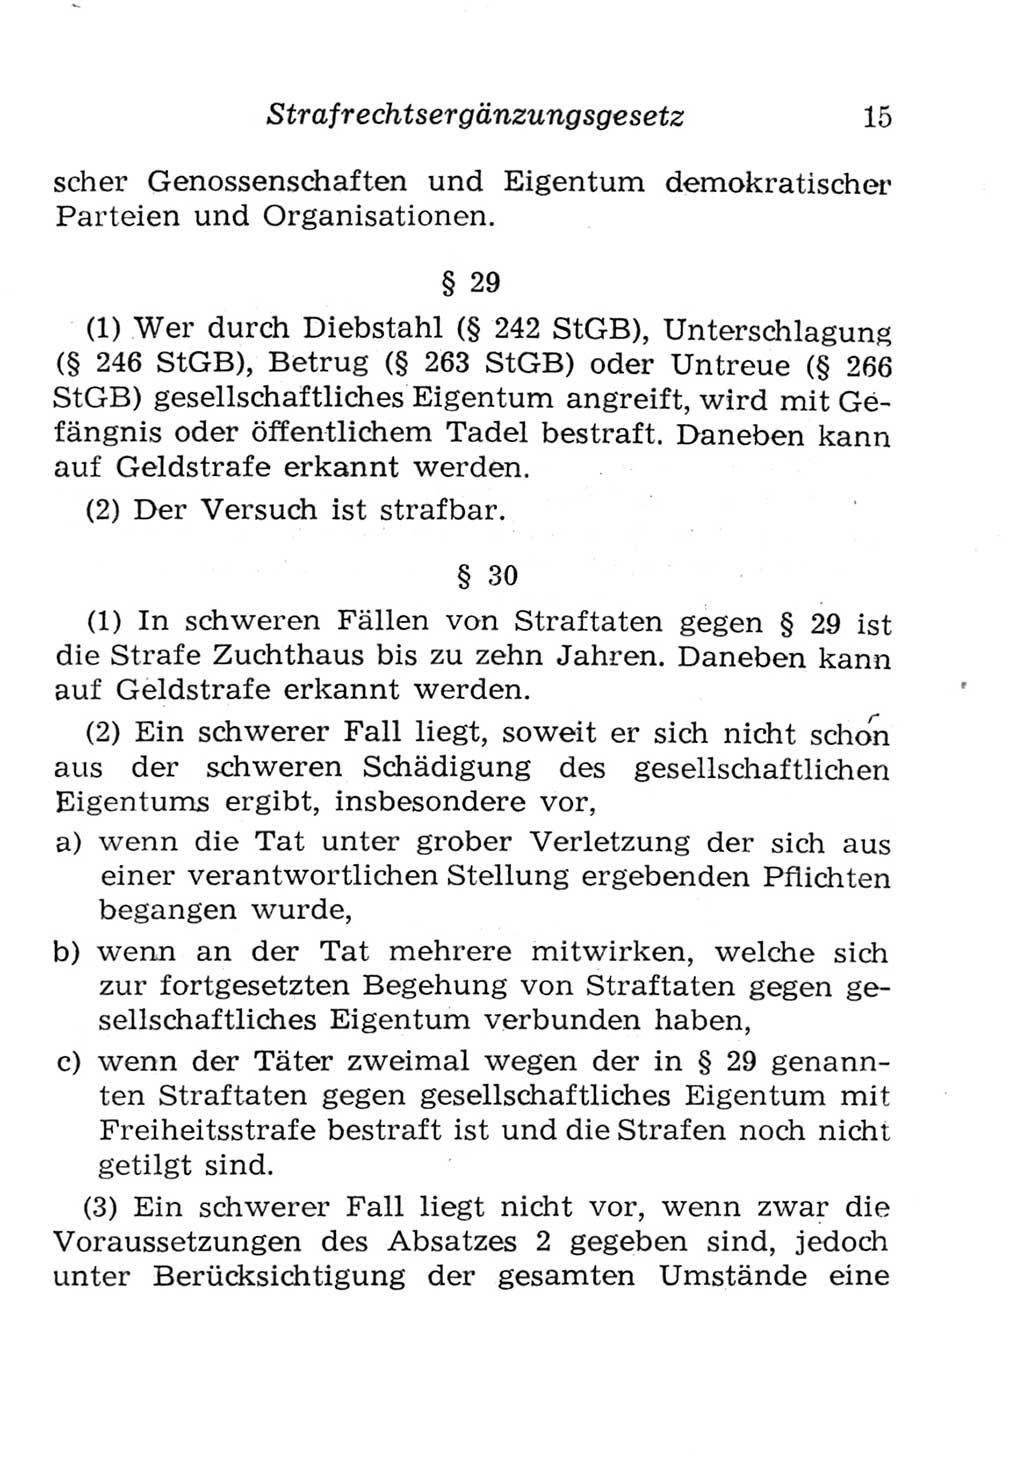 Strafgesetzbuch (StGB) und andere Strafgesetze [Deutsche Demokratische Republik (DDR)] 1957, Seite 15 (StGB Strafges. DDR 1957, S. 15)